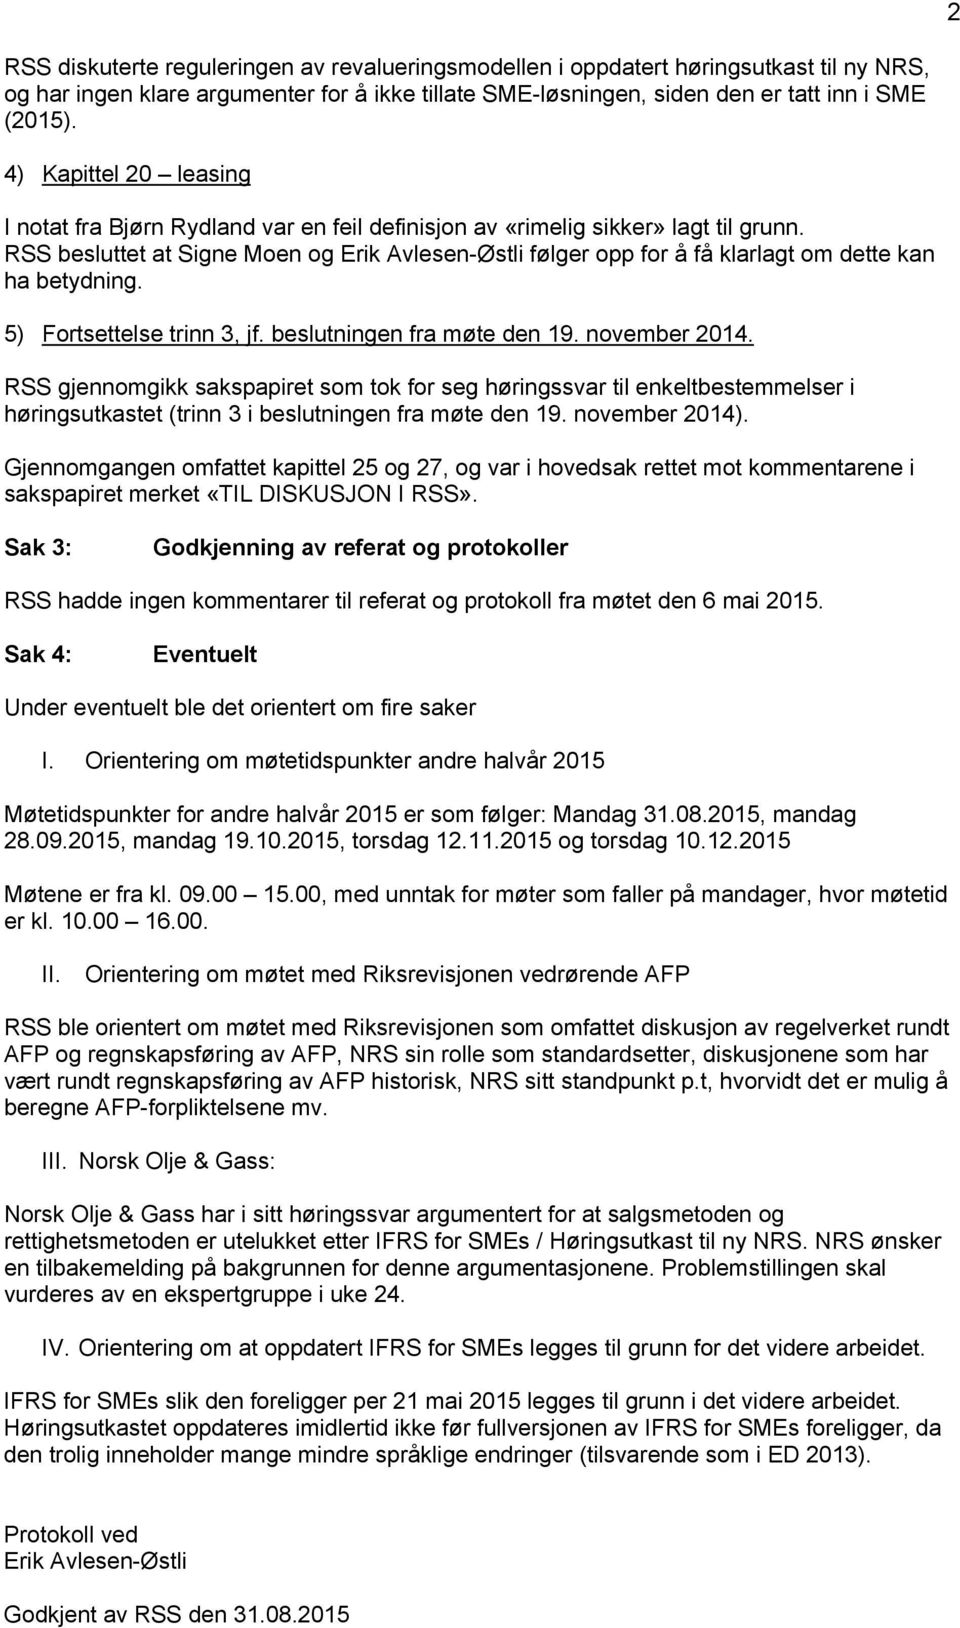 RSS besluttet at Signe Moen og Erik Avlesen-Østli følger opp for å få klarlagt om dette kan ha betydning. 5) Fortsettelse trinn 3, jf. beslutningen fra møte den 19. november 2014.